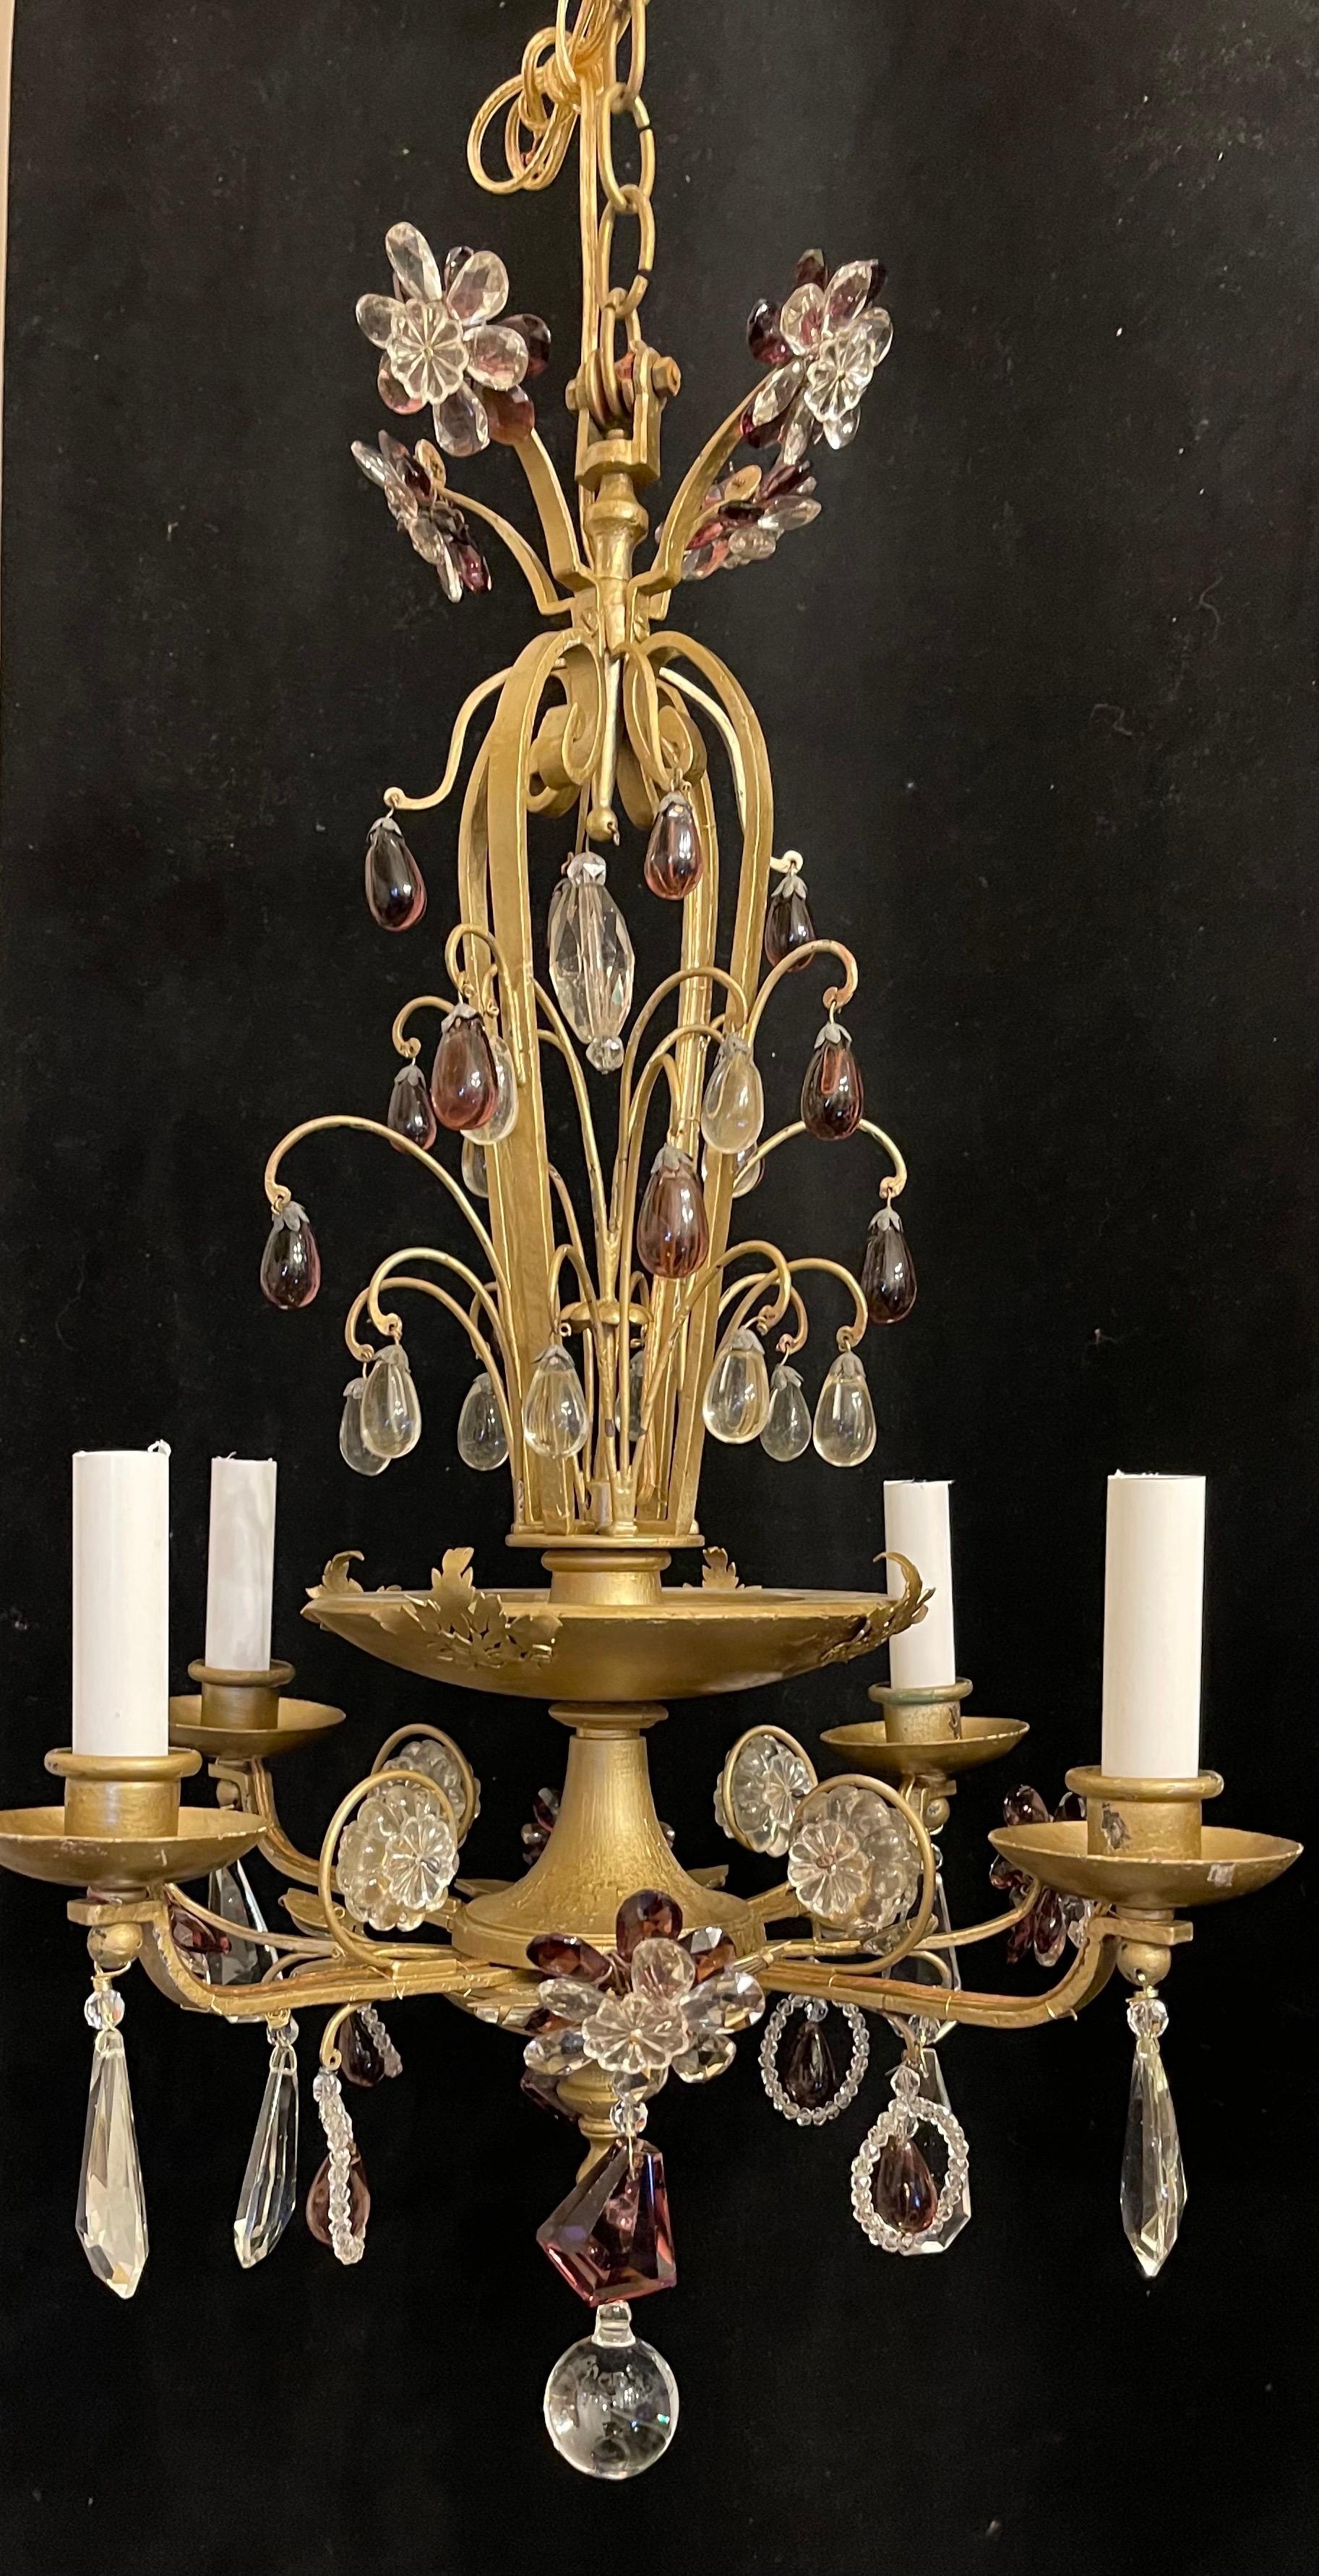 Une merveilleuse paire de lustres de style maison bagues en cristal améthyste perlé et bois doré